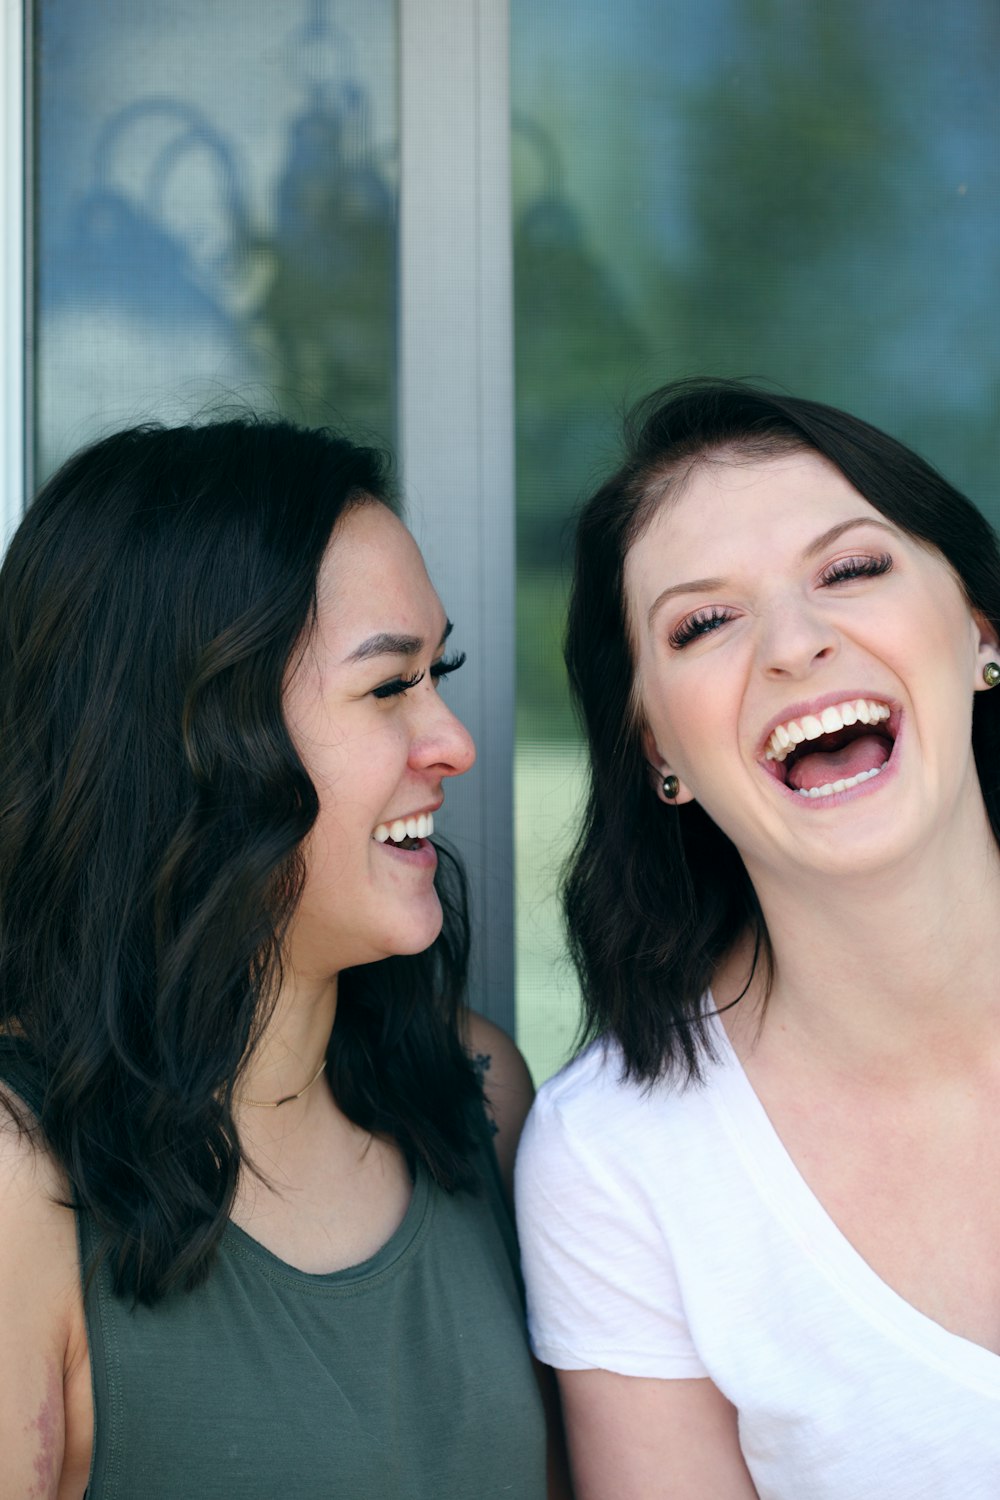 zwei Frauen lachen